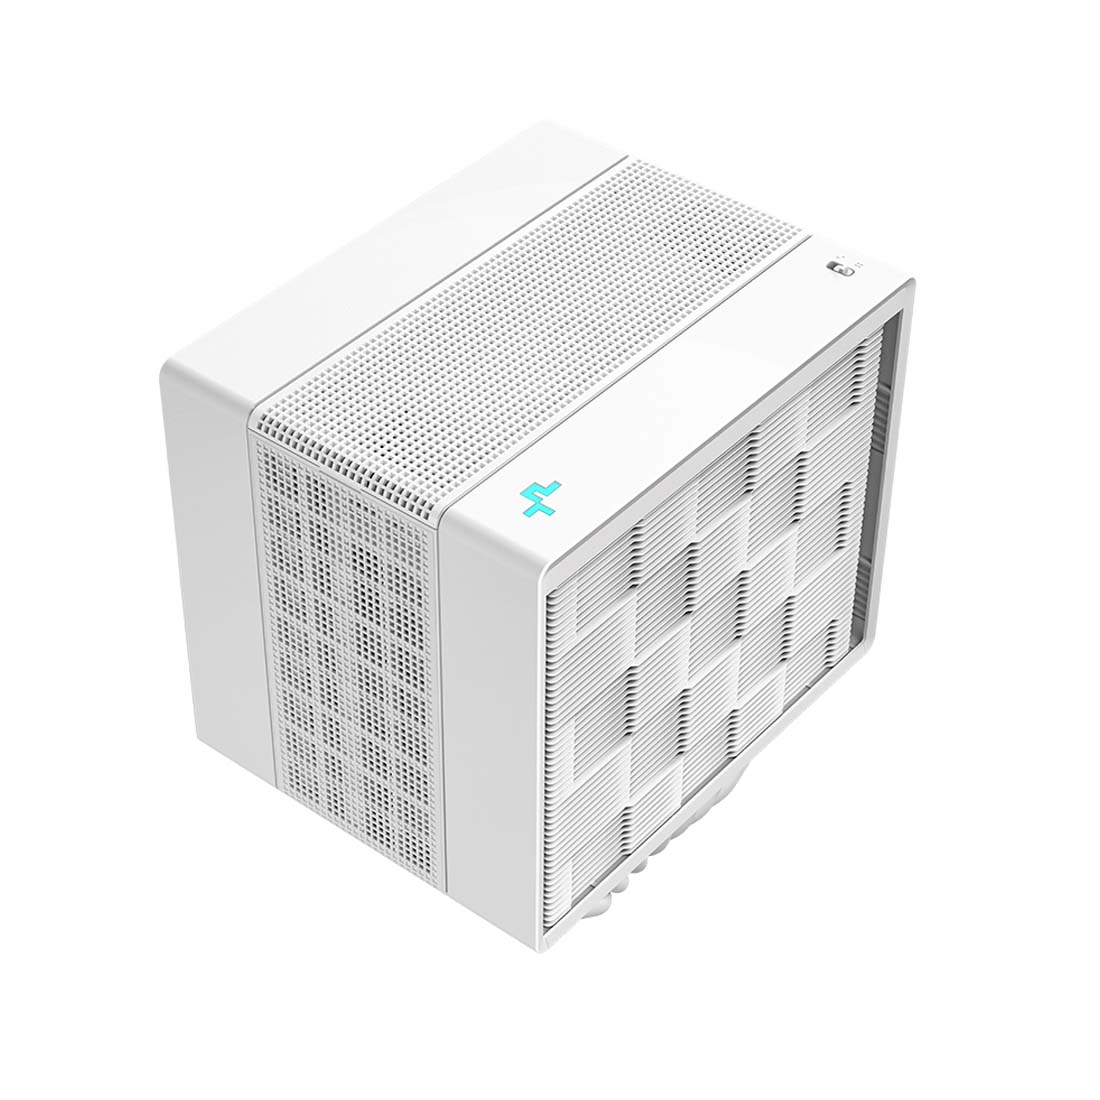 Deepcool Assassin 4S CPU Air Cooler - White - مبرد